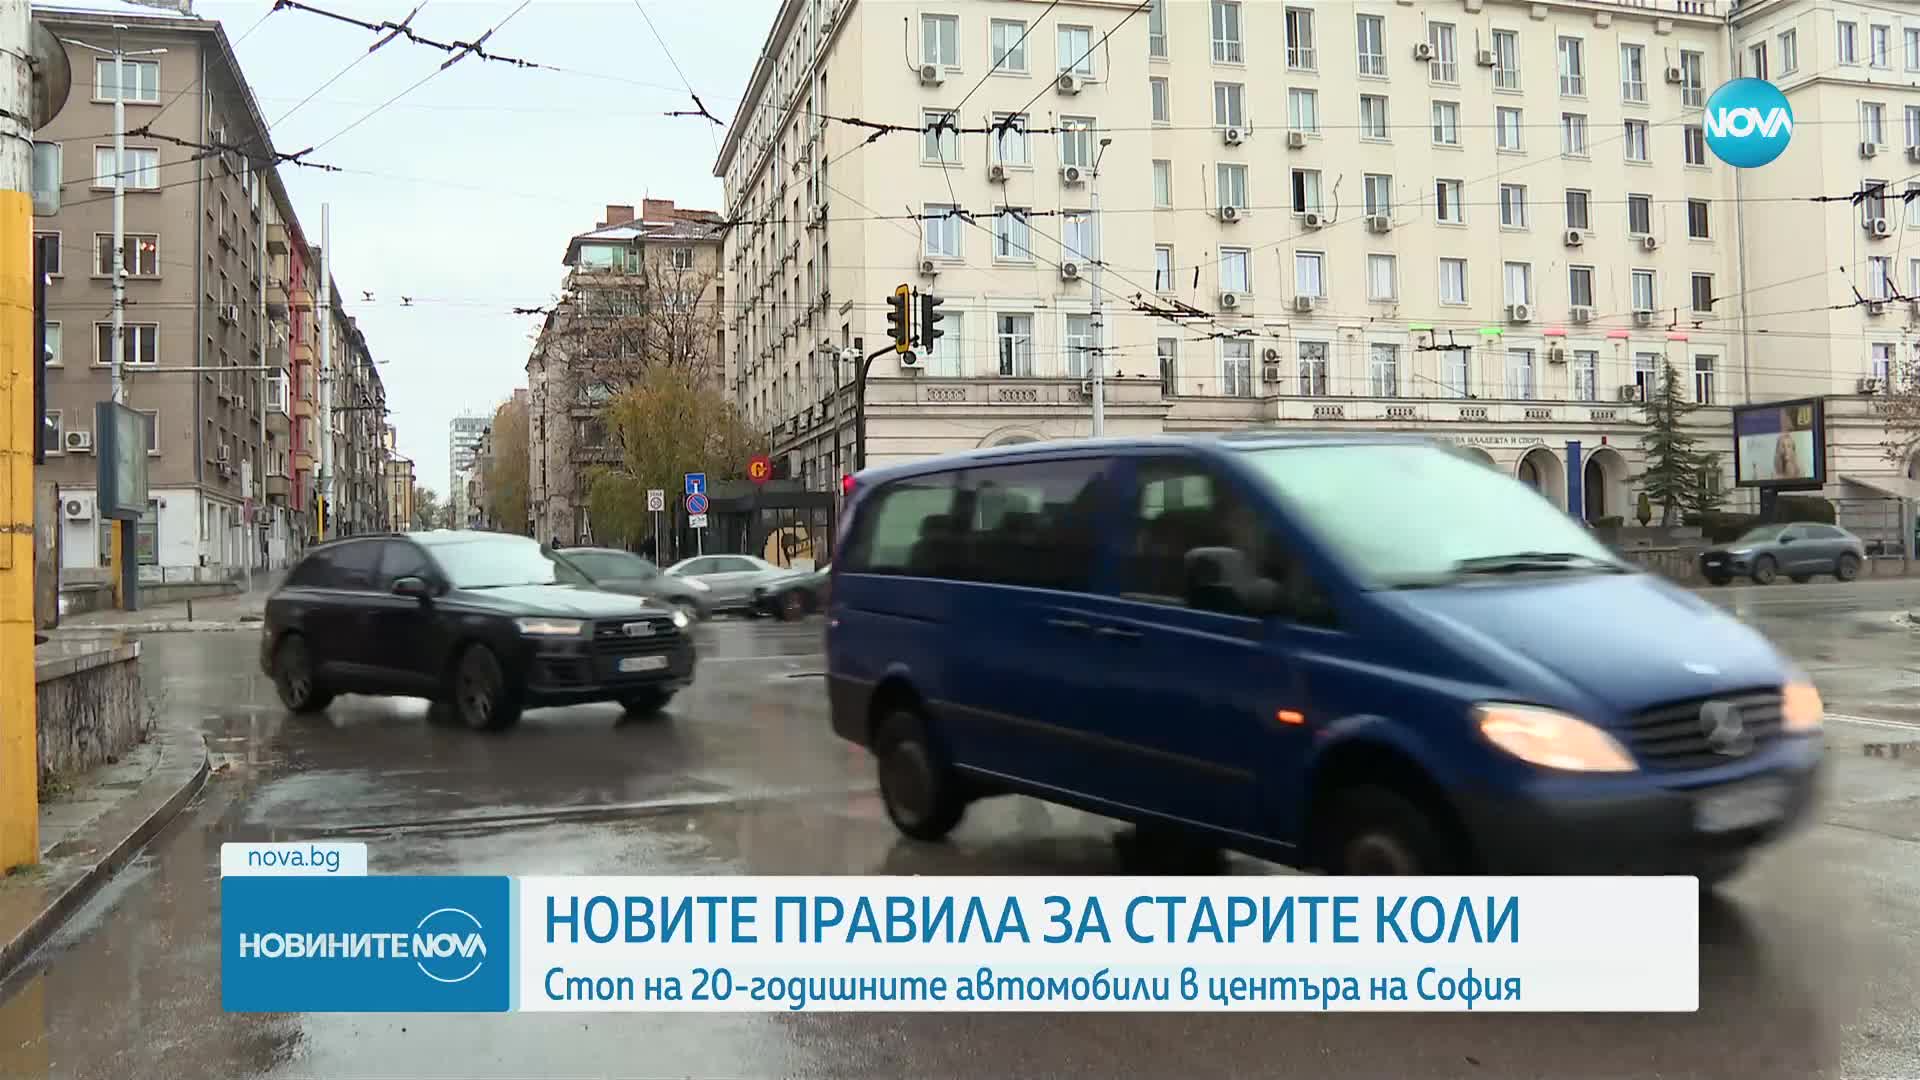 Екип на NOVA провери спазва ли се забраната за стари коли в центъра на София